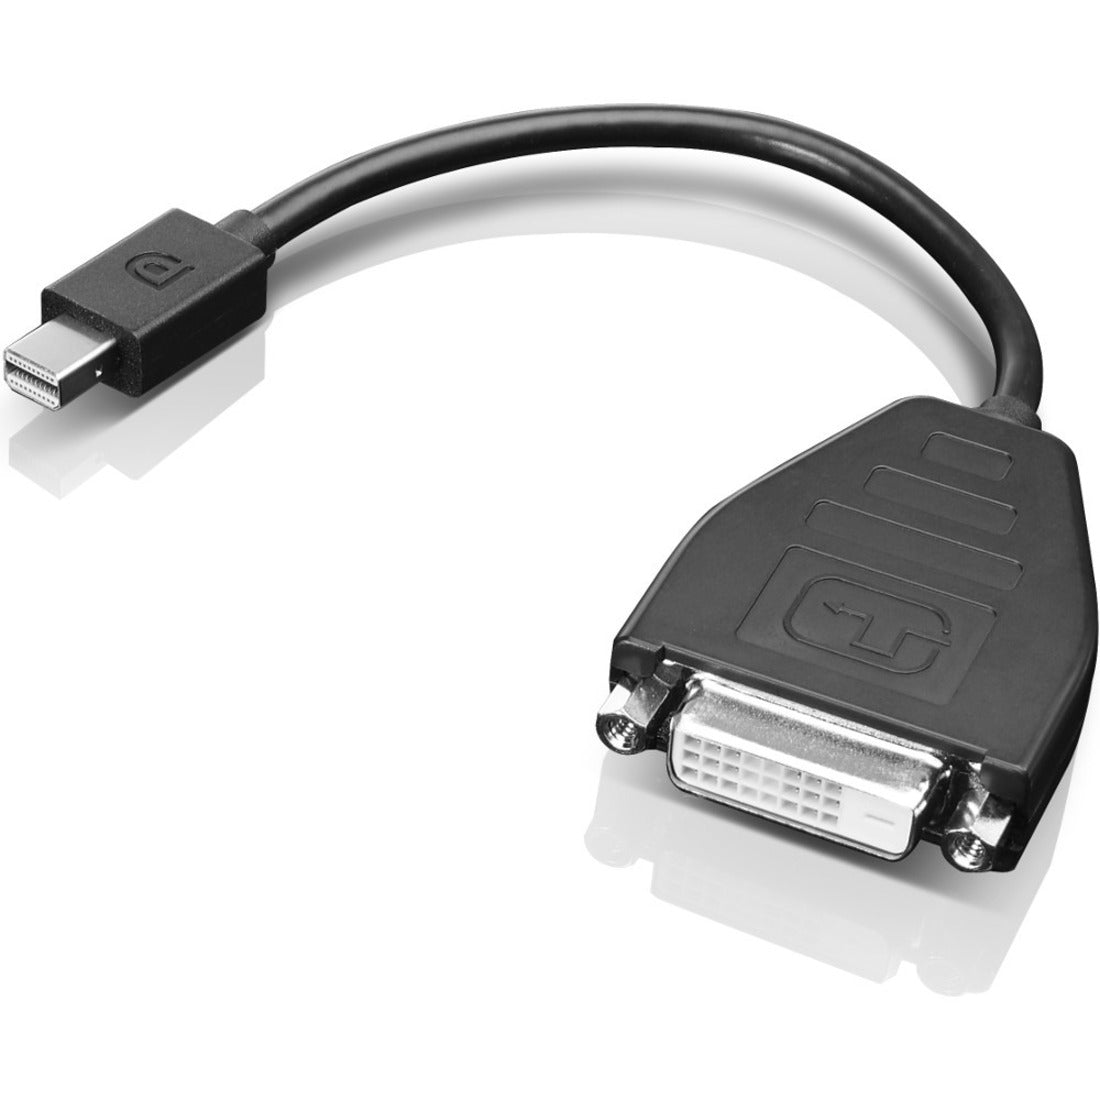 Lenovo 0B47090 Mini-DisplayPort vers câble d'adaptateur DVI-D (lien unique) Connectez vos appareils facilement